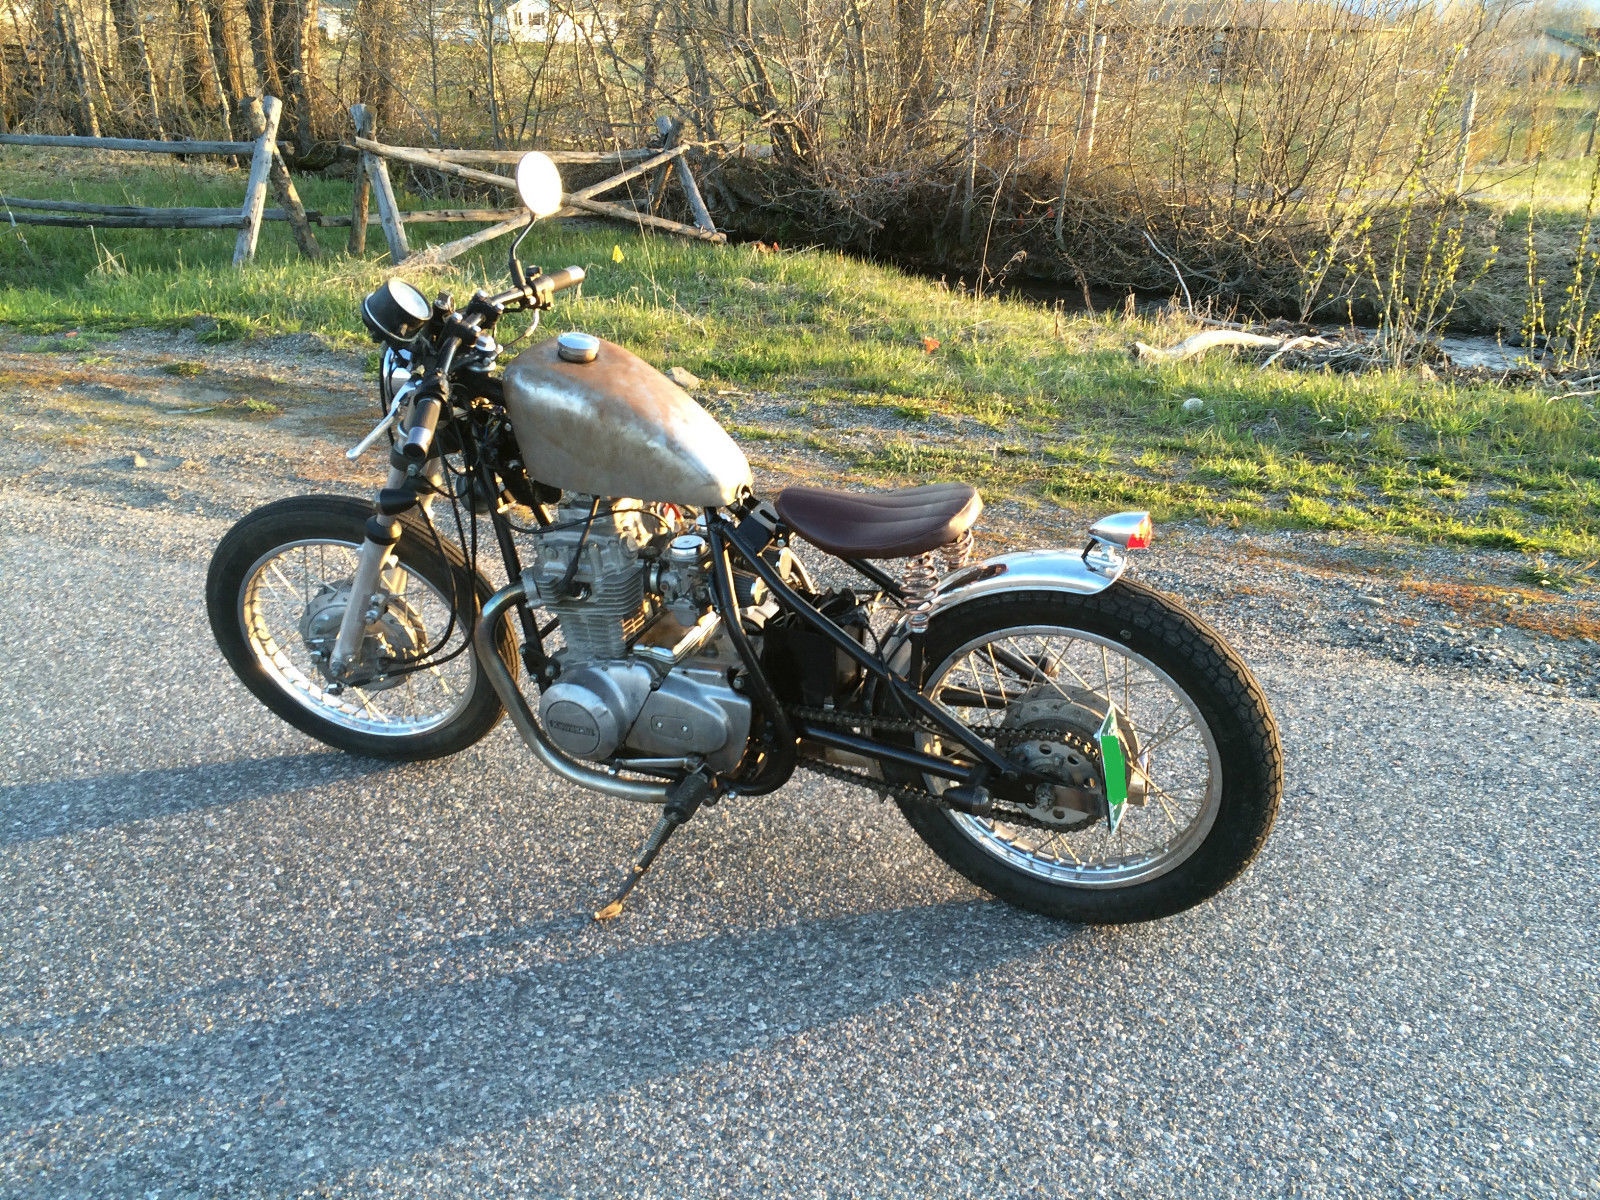 KZ440 Bobber Chopper / Cafe Racer / Custom Motorcycle